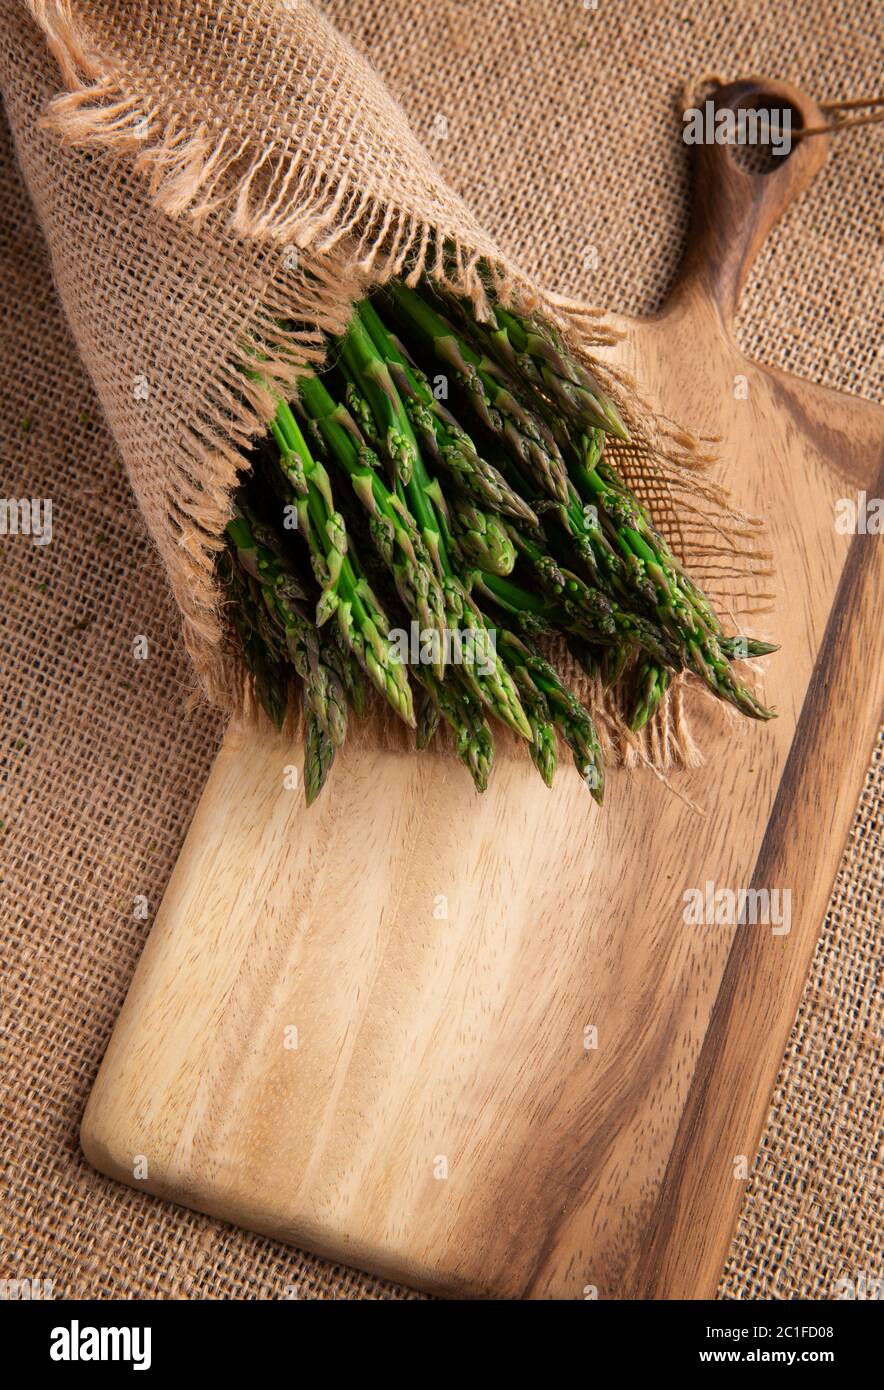 Grappoli di asparagi verdi freschi su tela. Vista dall'alto - immagine. Foto di alta qualità Foto Stock